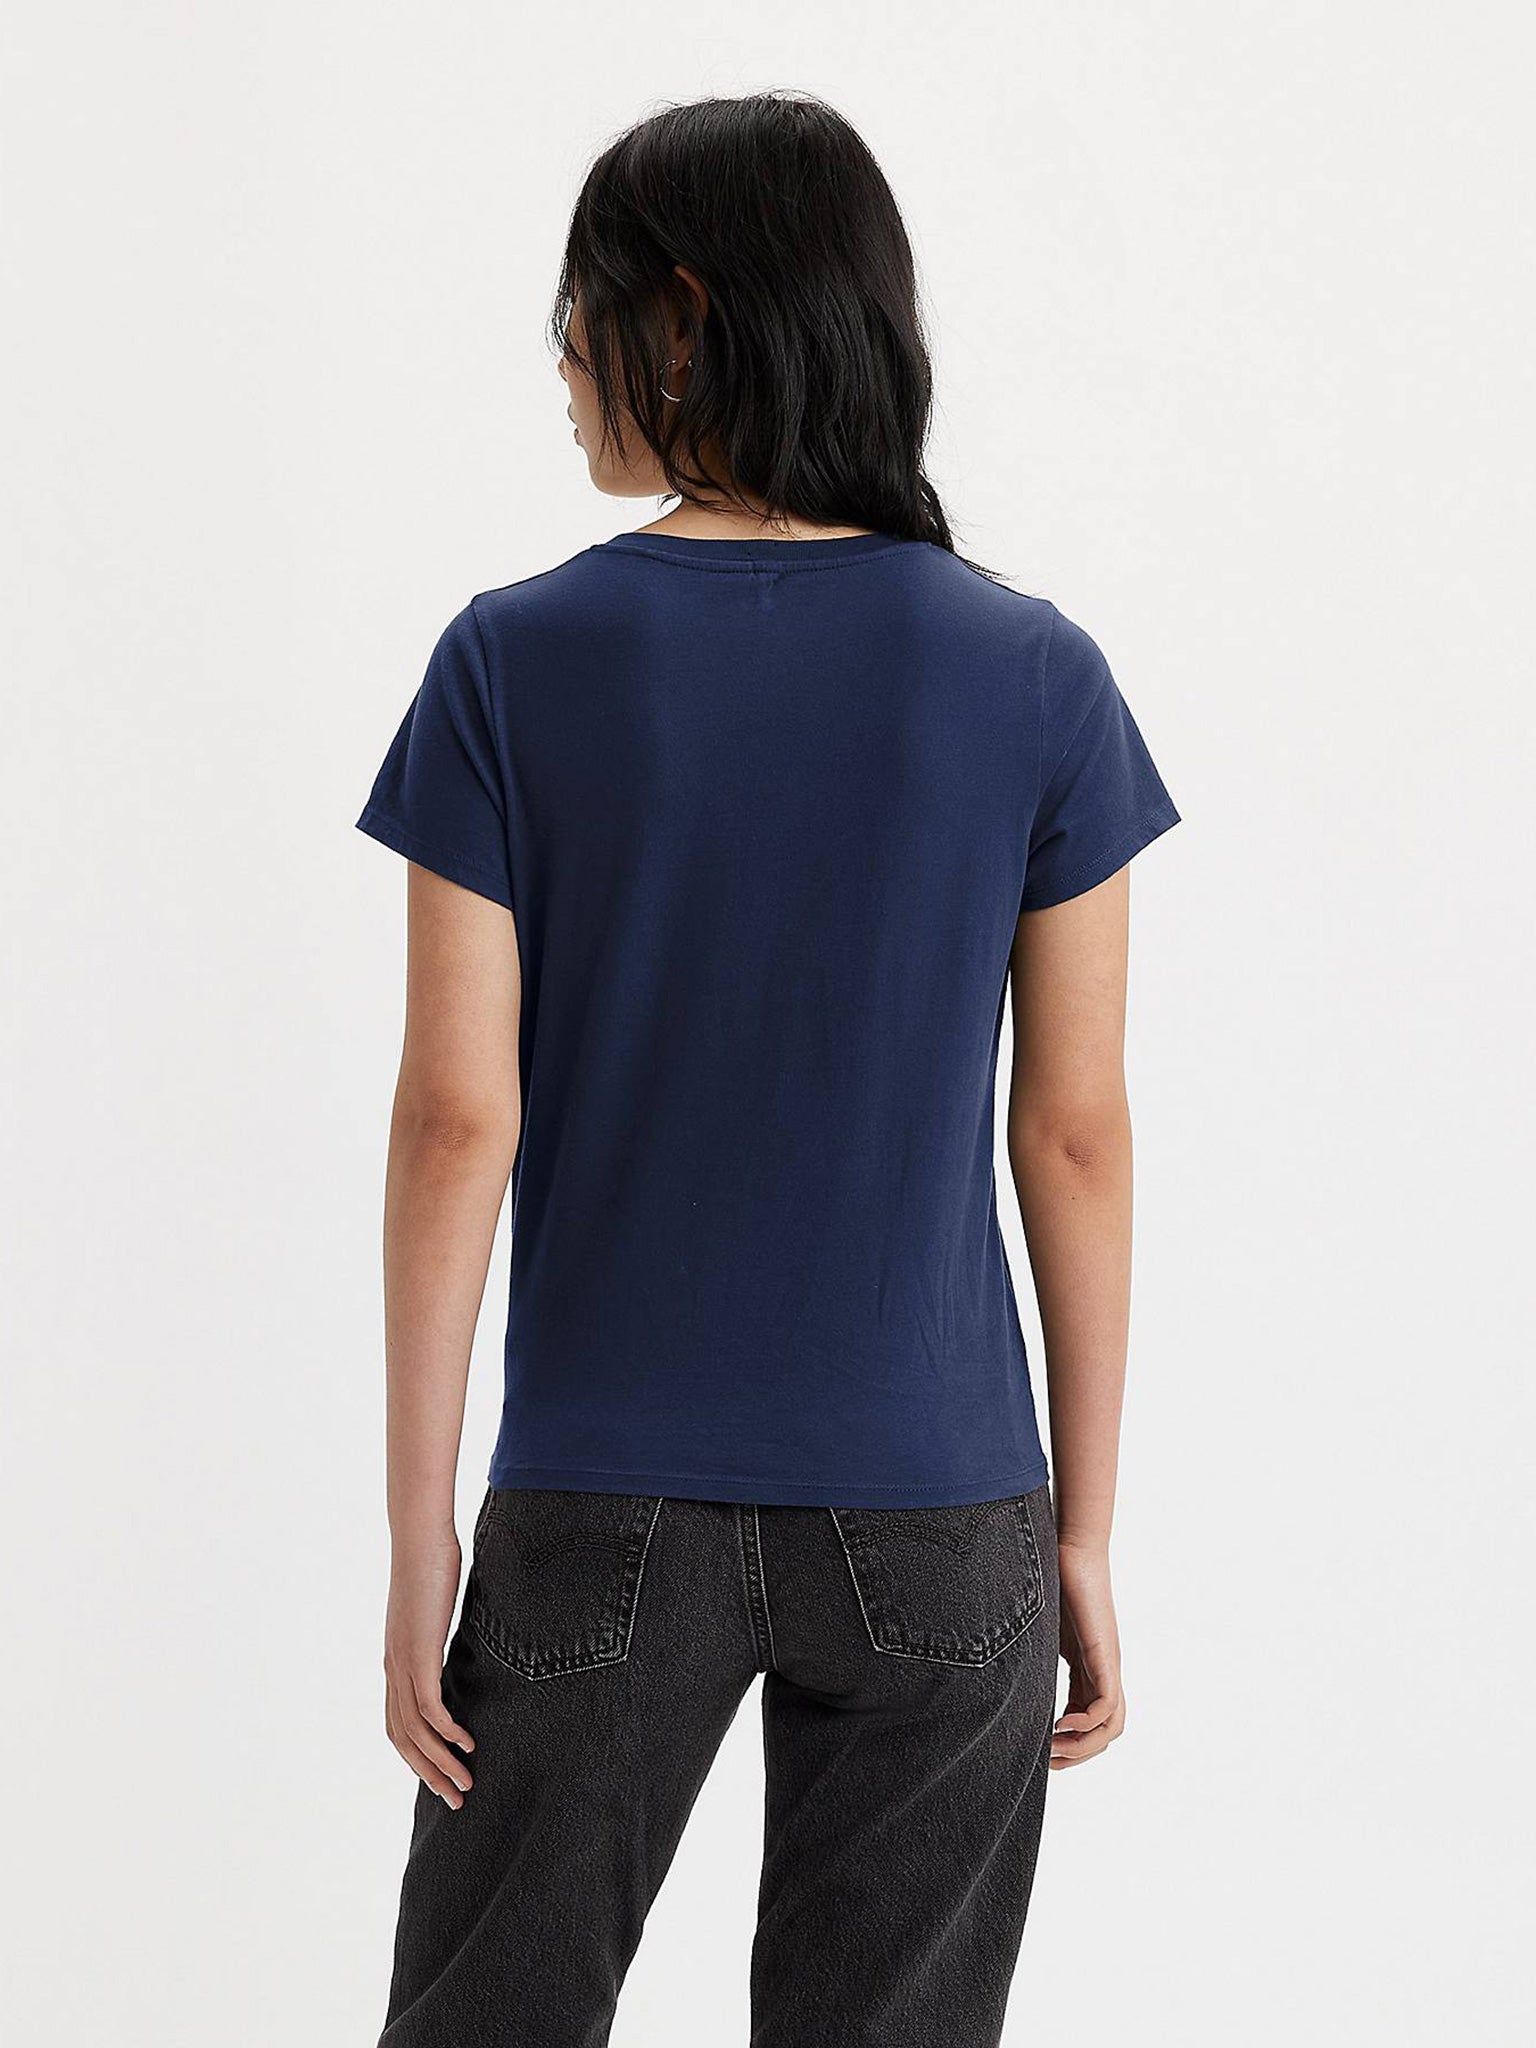 Γυναικείο t-shirt perfect vneck blues 853410064 | 853410064